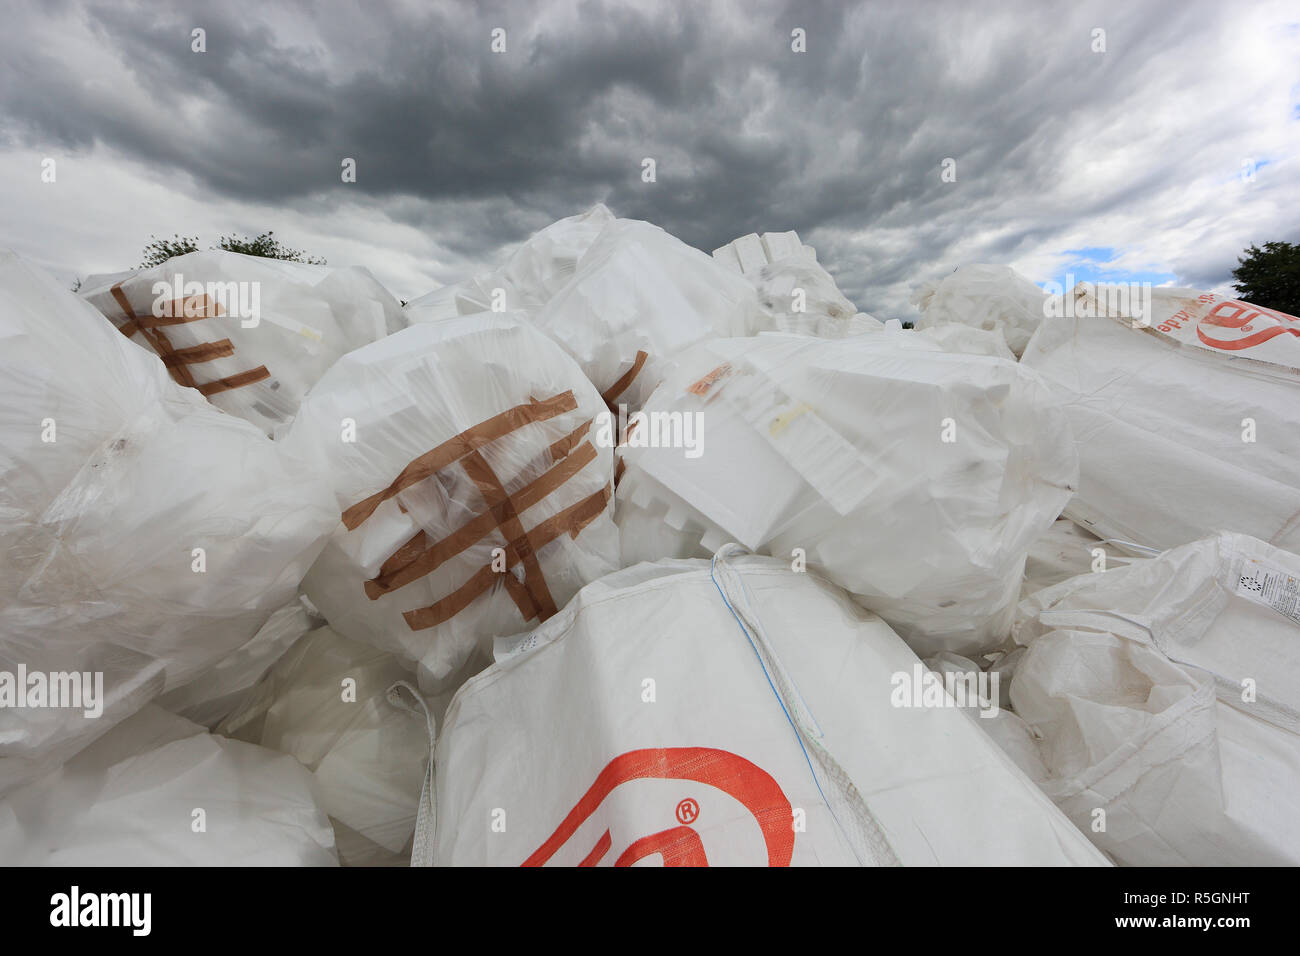 L'élimination des déchets, le recyclage des déchets, de l'entrepôt d'isolement, styrophor, emballé dans des sacs en plastique, Allemagne Banque D'Images